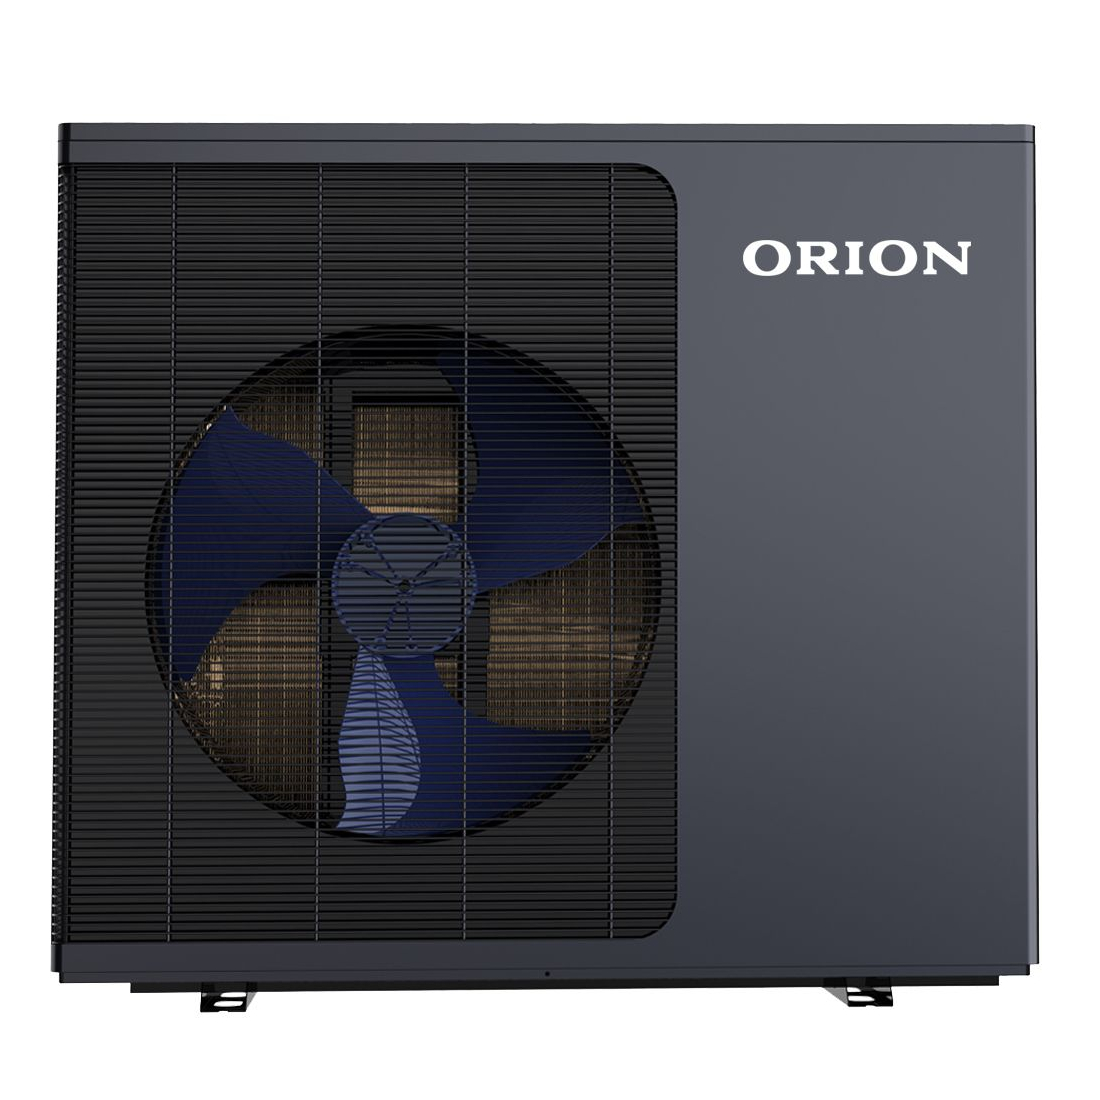 ORION Pro Line HP 8. 11, 15 kW levegő-víz hőszivattyúk